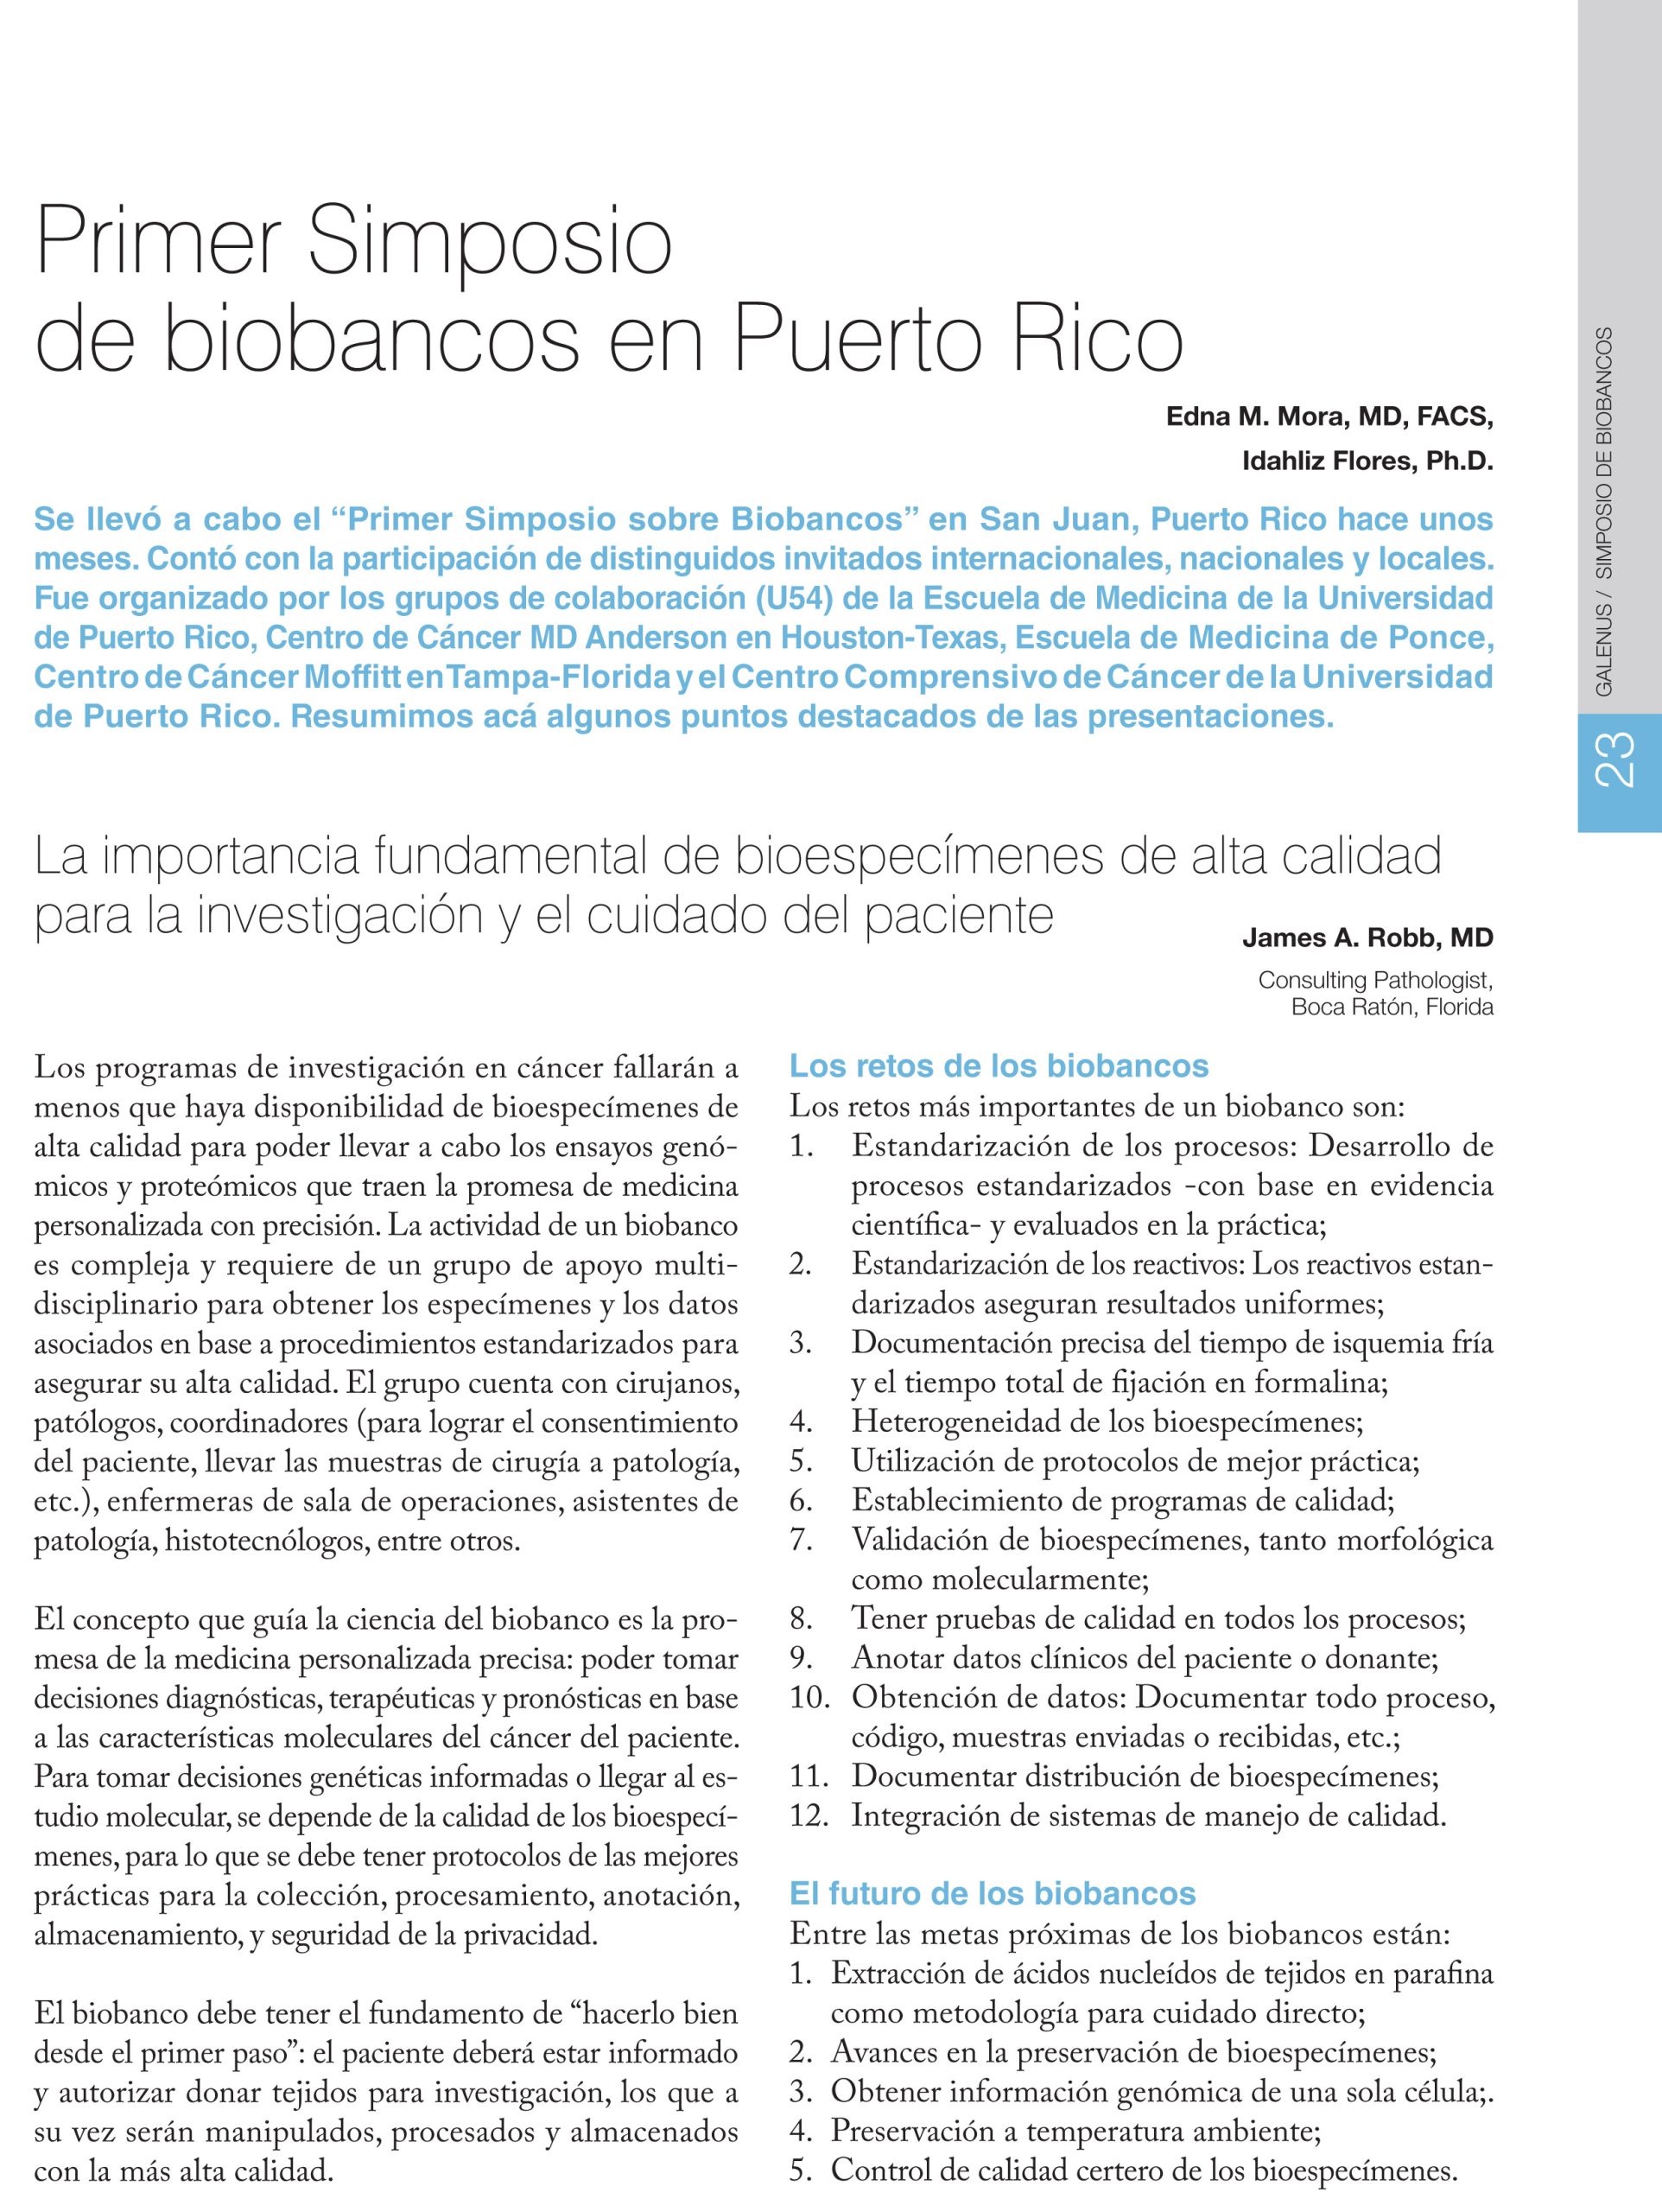 Primer Simposio de biobancos en Puerto Rico